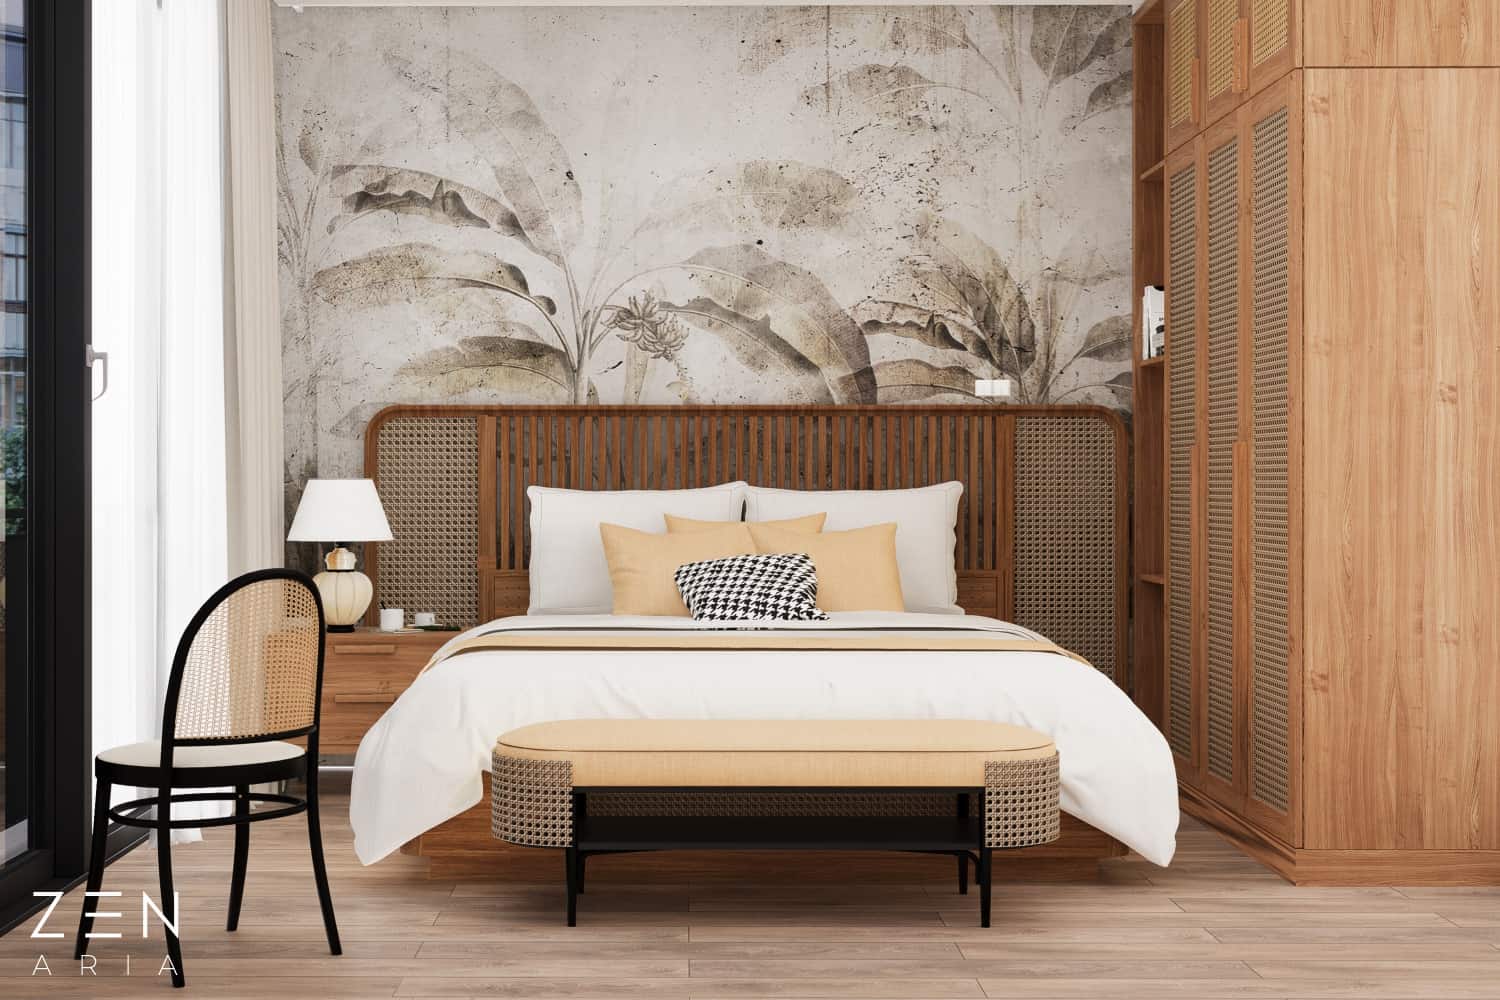 2. Modele de tapet pentru dormitor - recomandări de tapet în funcție de dimensiunile și stilul dormitorului - Tapet Grenada Harvest Sepia, model de tapet cu frunze de bananier, tropical (4)